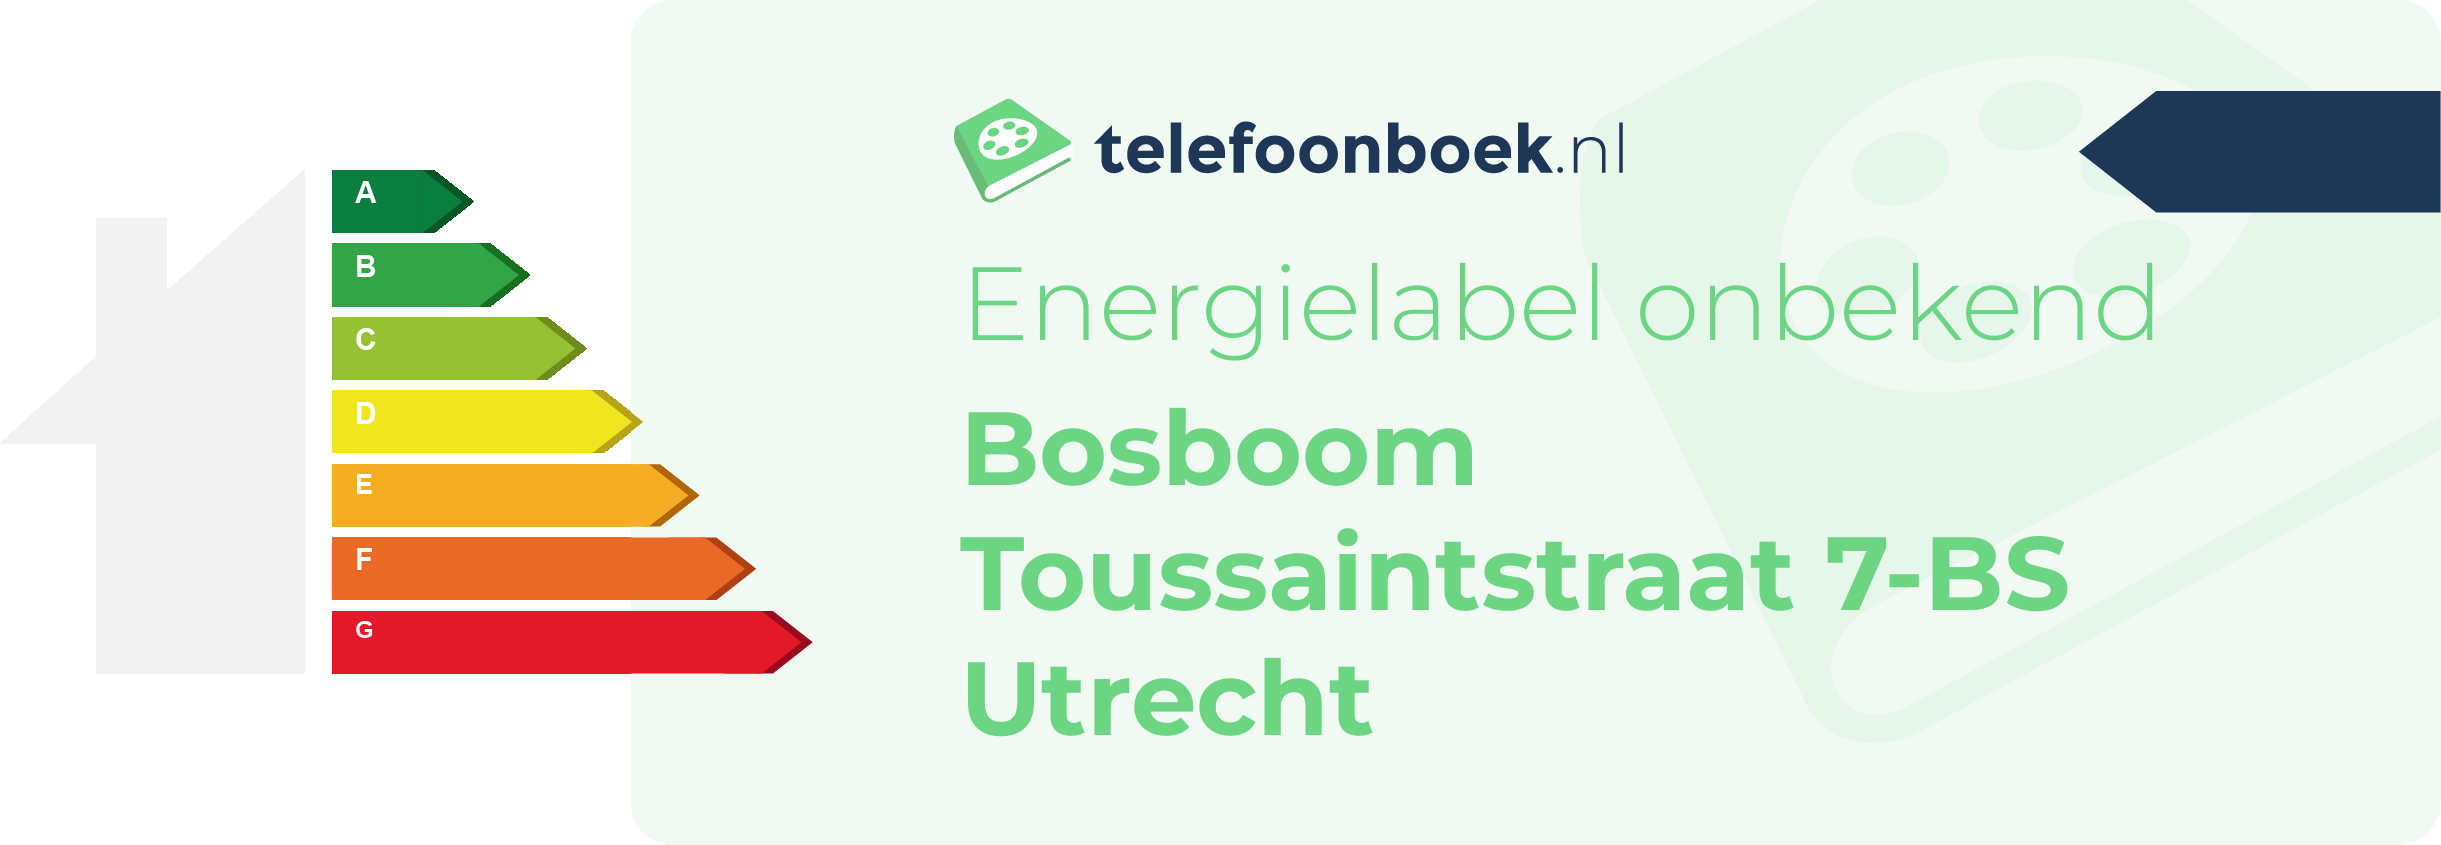 Energielabel Bosboom Toussaintstraat 7-BS Utrecht